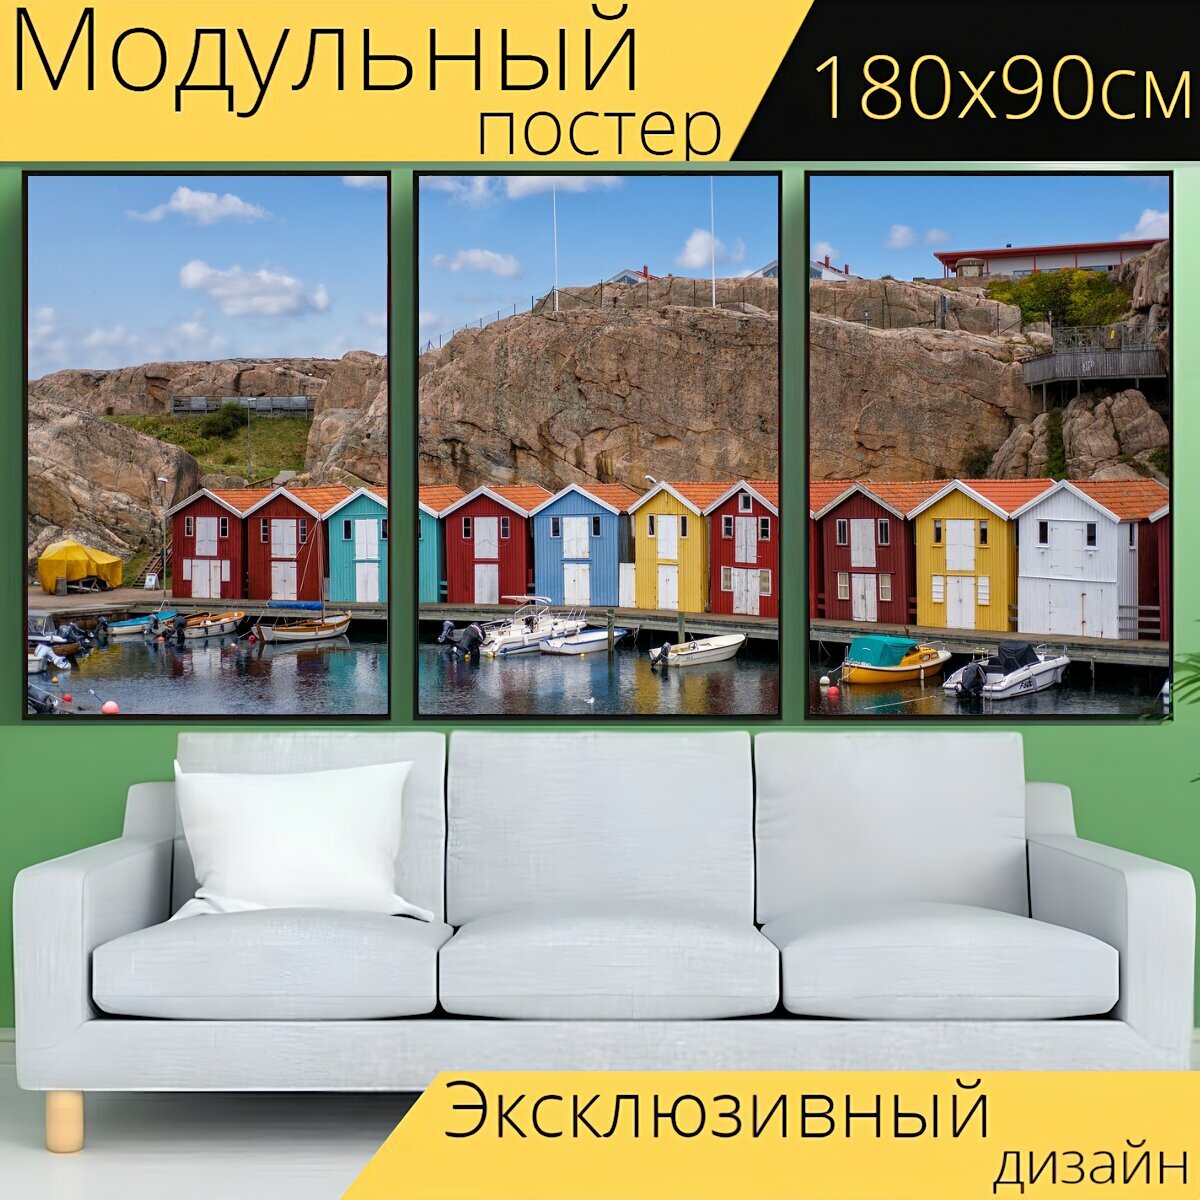 Модульный постер "Рыбацкая хижина, хижина, дом" 180 x 90 см. для интерьера